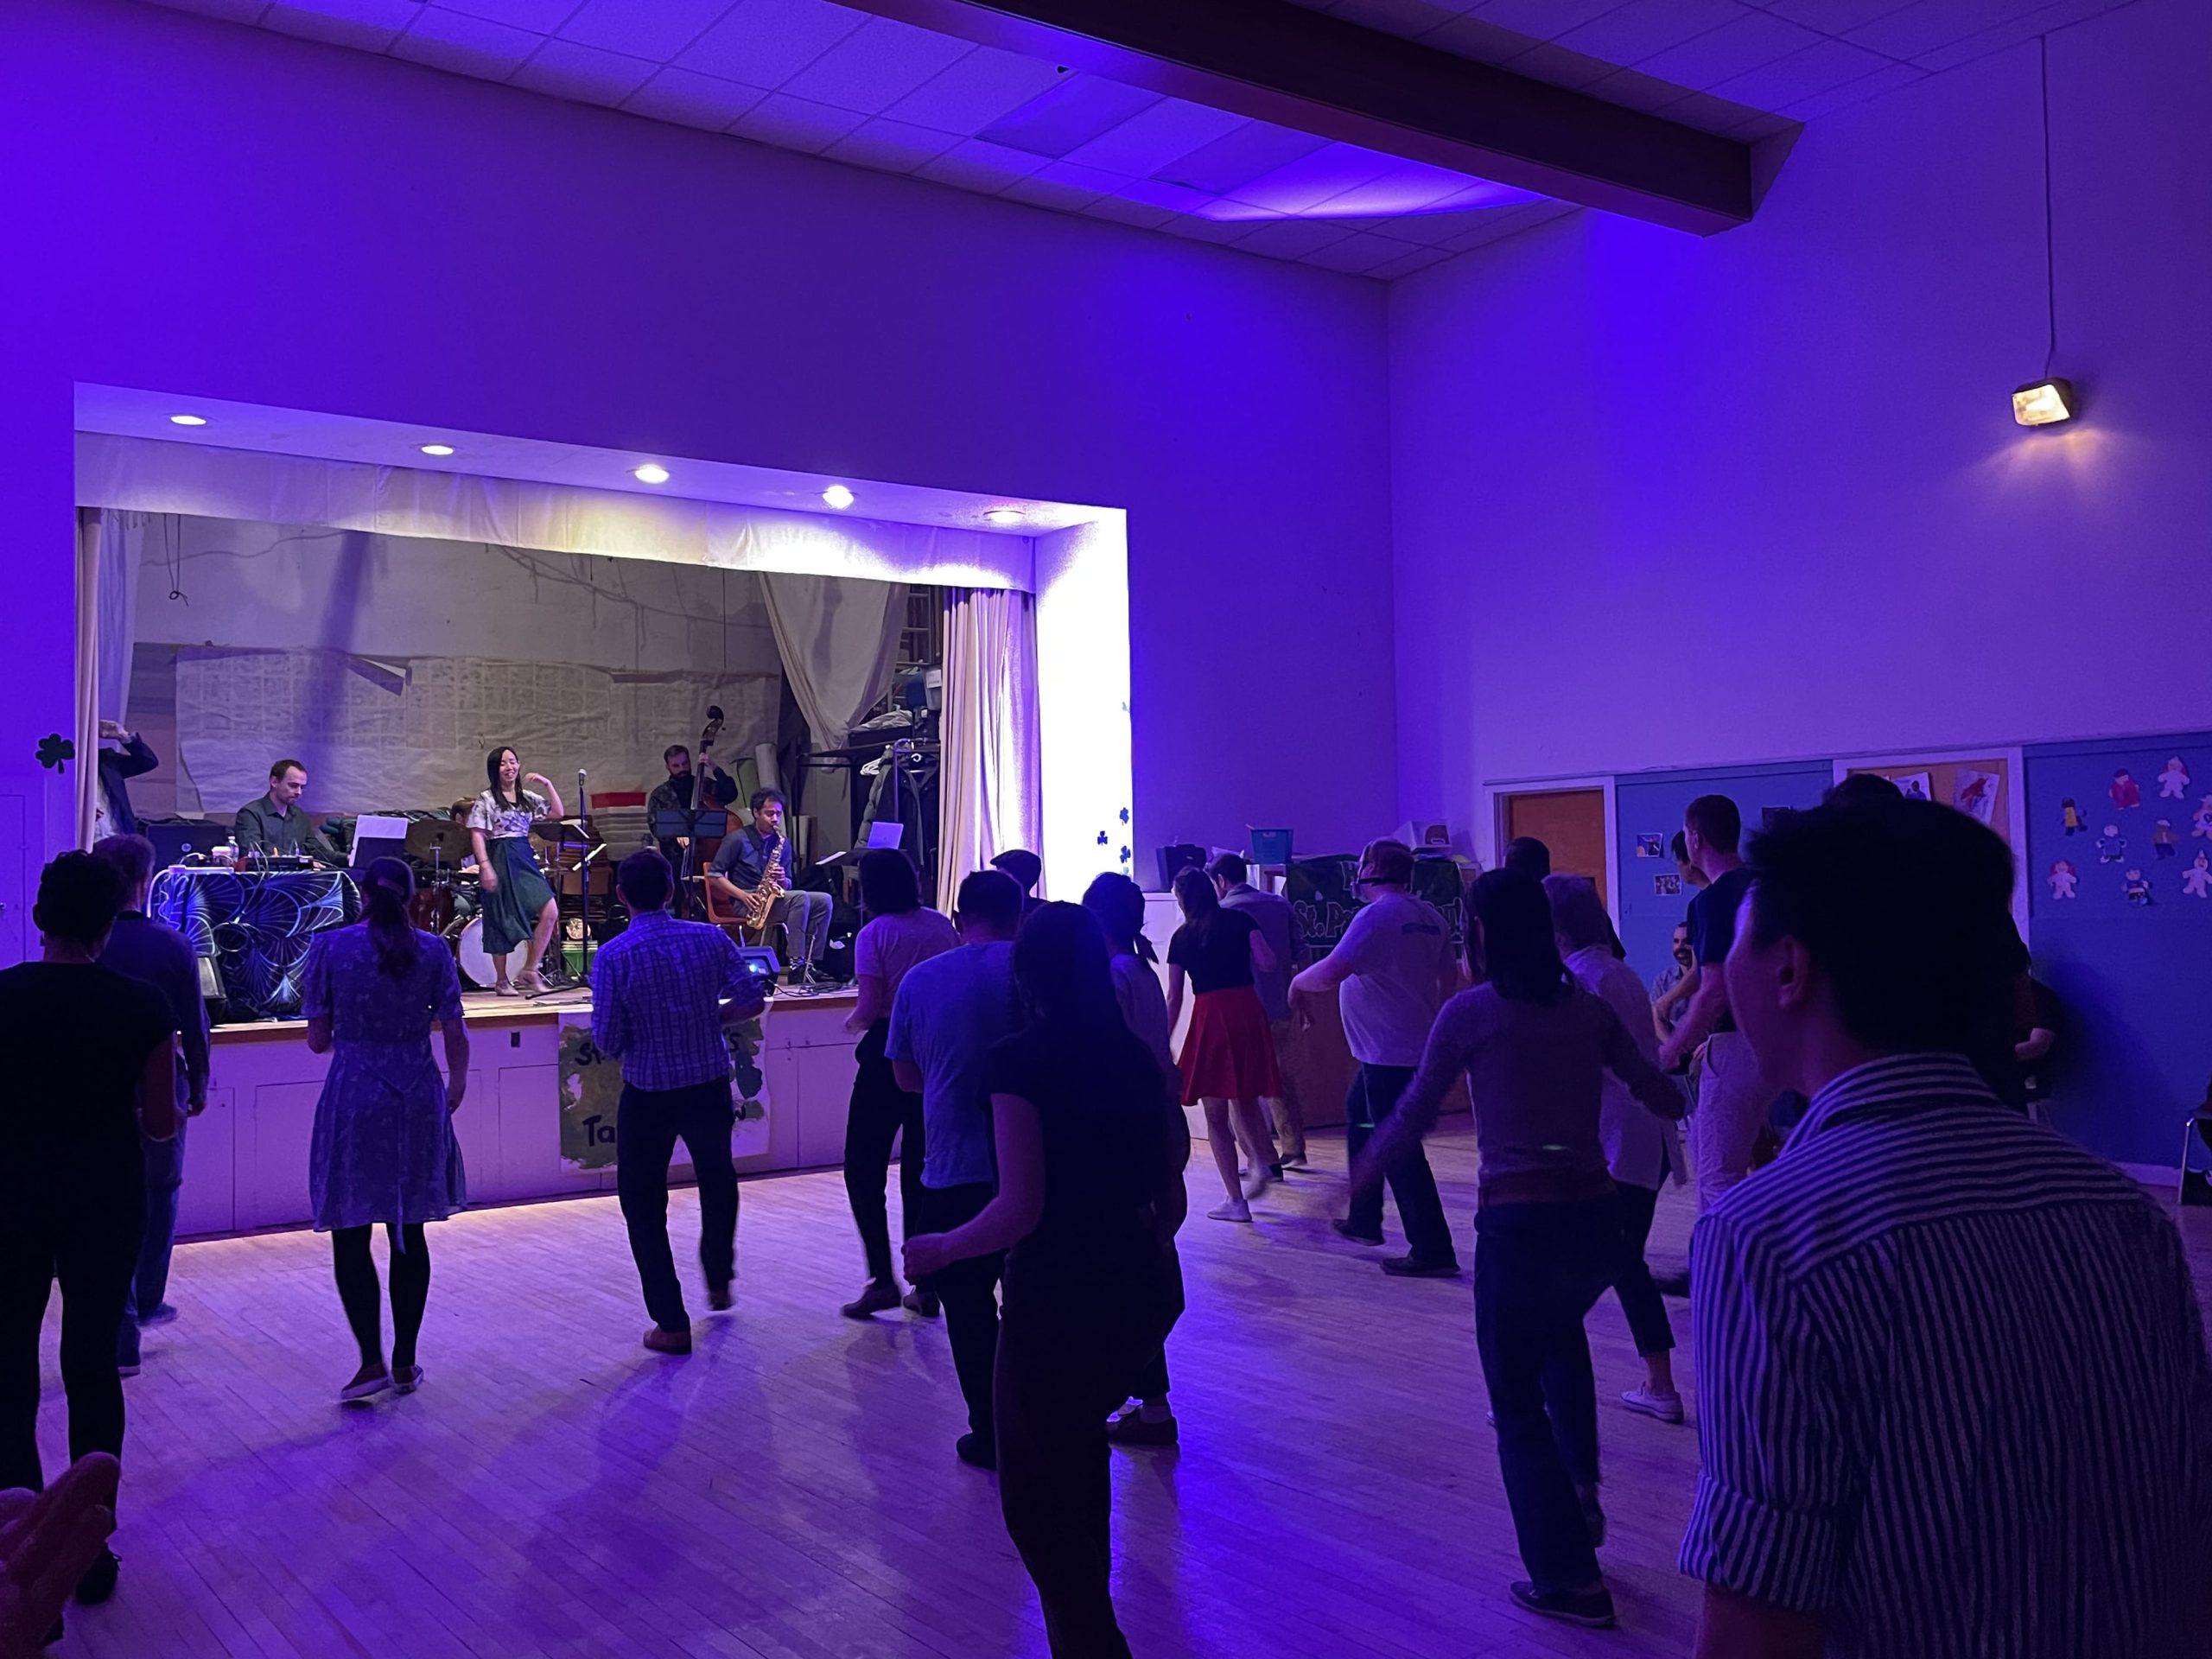 Des gens dansent dans une salle avec un groupe de musique sur scène.